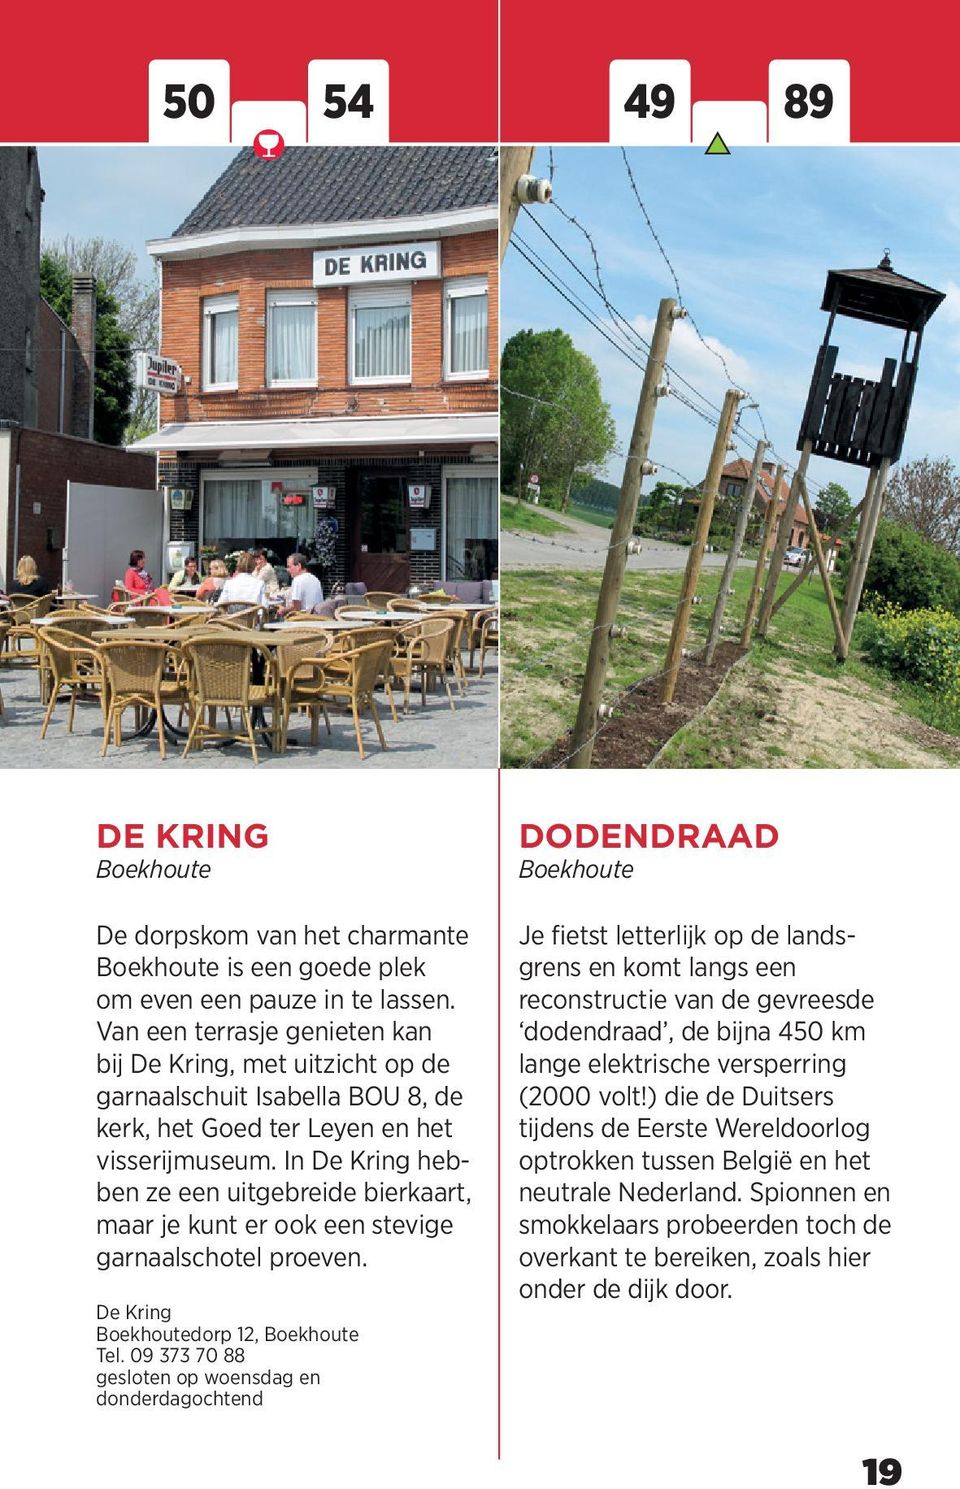 In De Kring hebben ze een uitgebreide bierkaart, maar je kunt er ook een stevige garnaalschotel proeven. De Kring Boekhoutedorp 12, Boekhoute Tel.